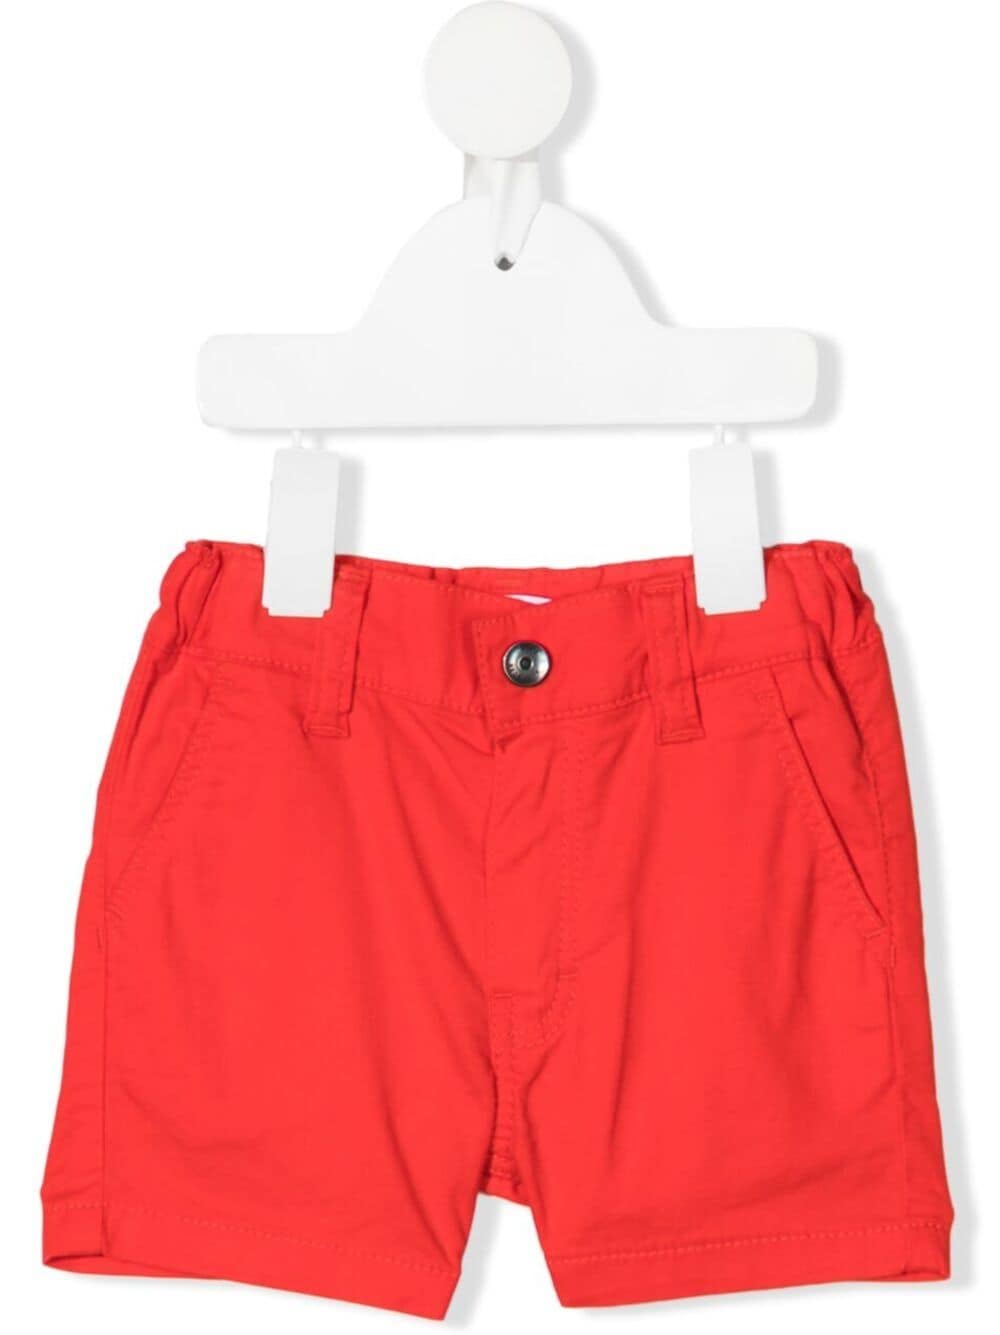 Bosswear Babies' Pull-on Bermuda Shorts In Red